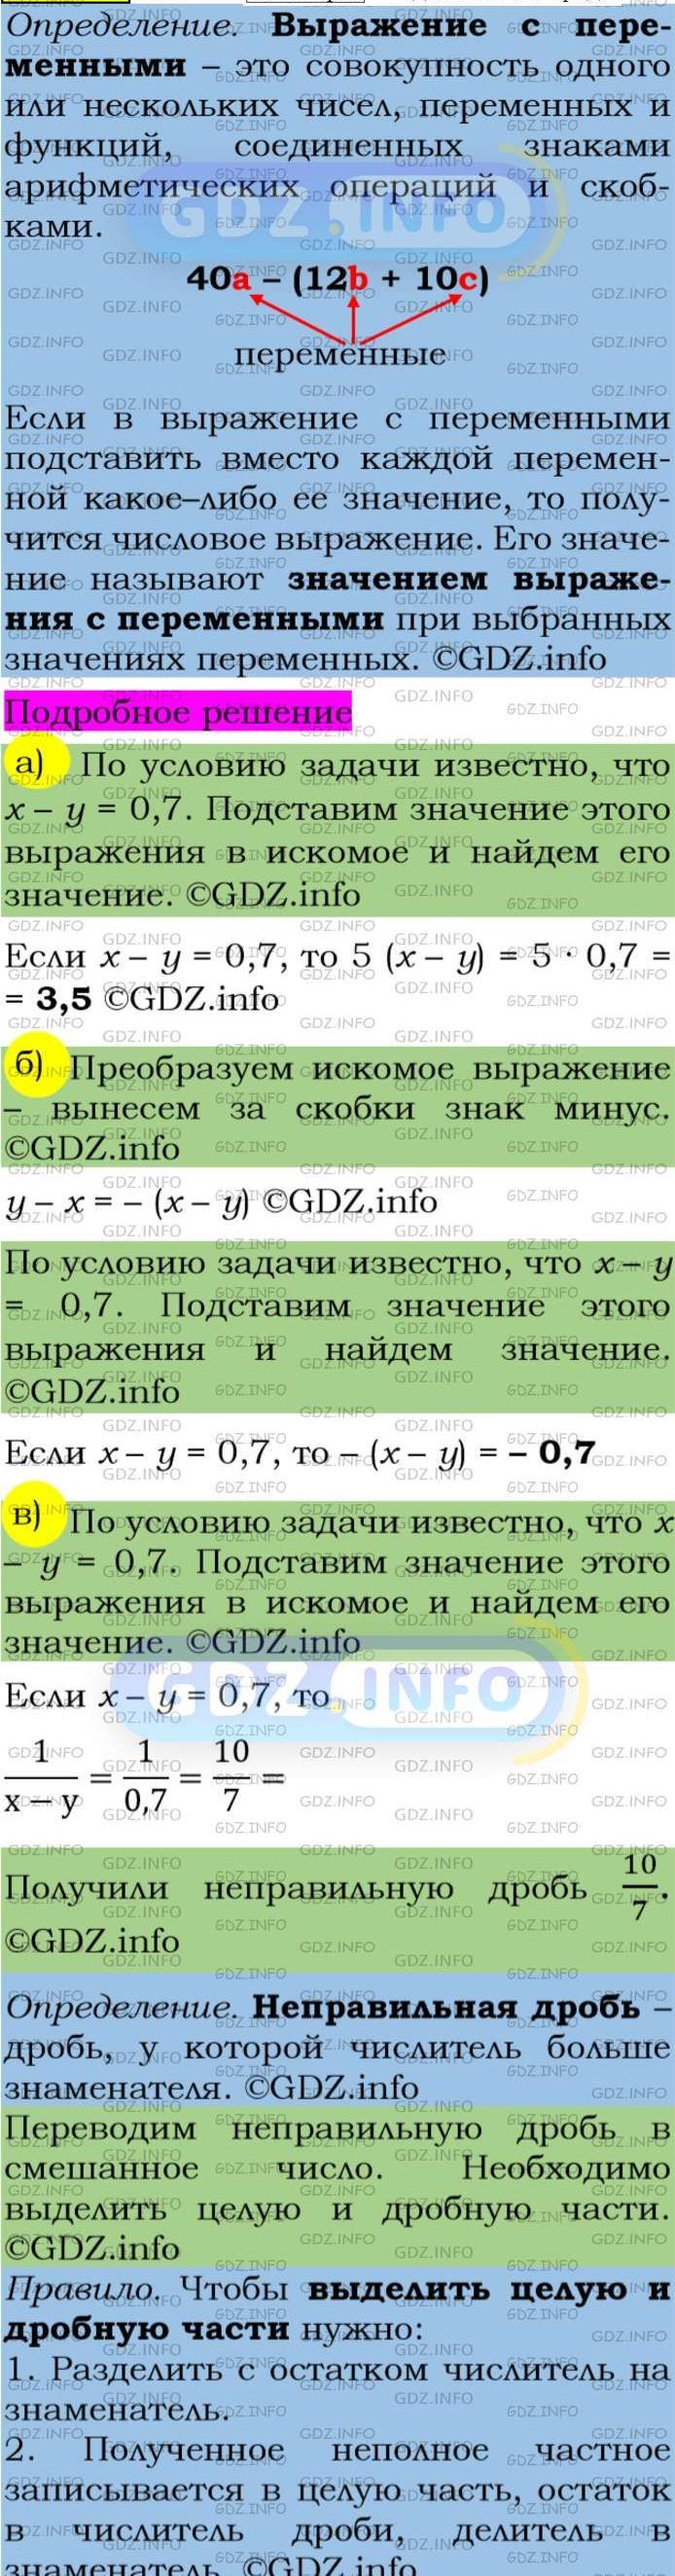 Фото подробного решения: Номер задания №44 из ГДЗ по Алгебре 7 класс: Макарычев Ю.Н.